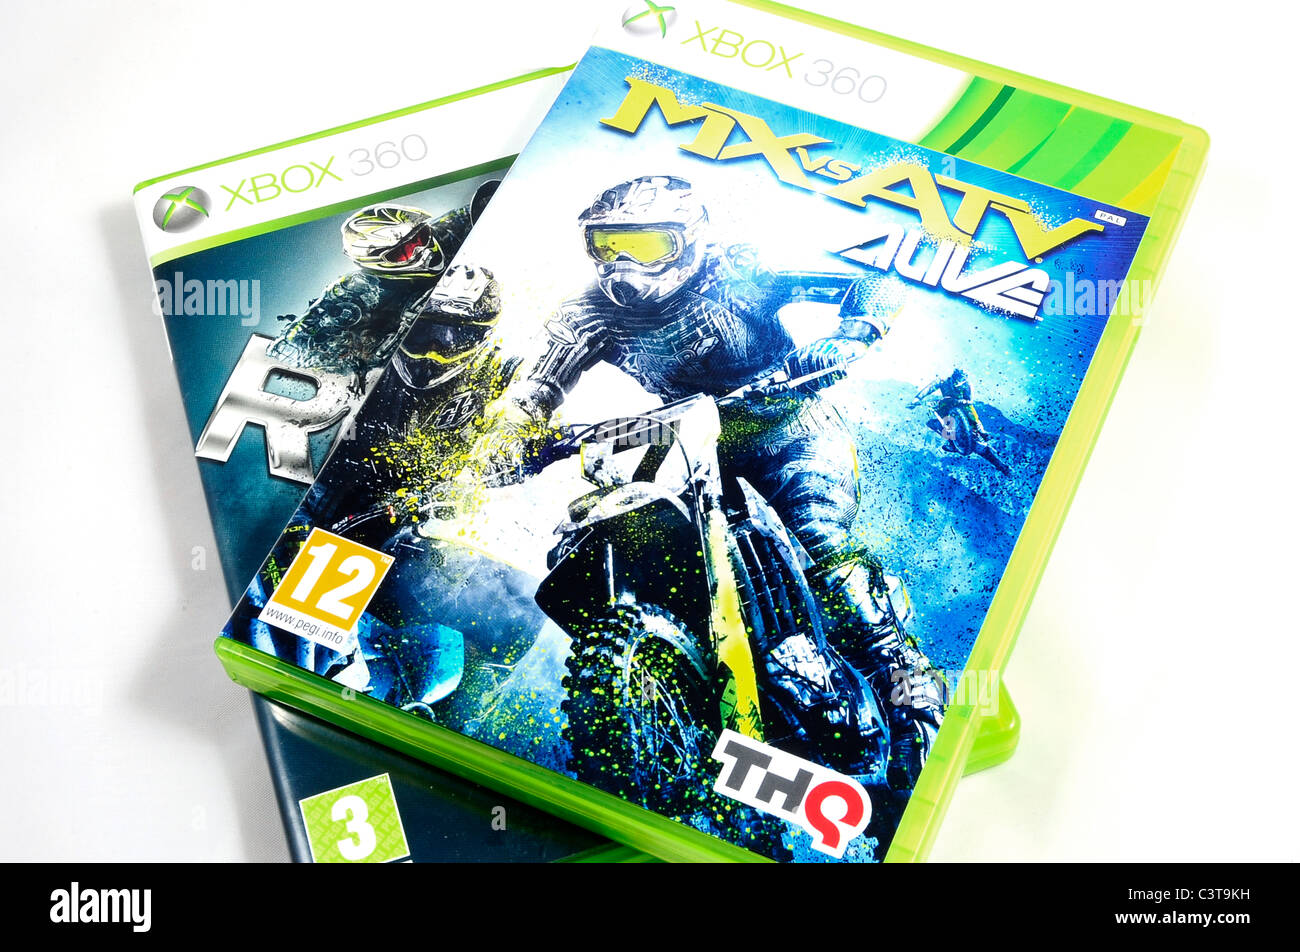 Mx vs Atv Alive - new motocross game (xbox 360) with Reflex underneath  Stock Photo - Alamy